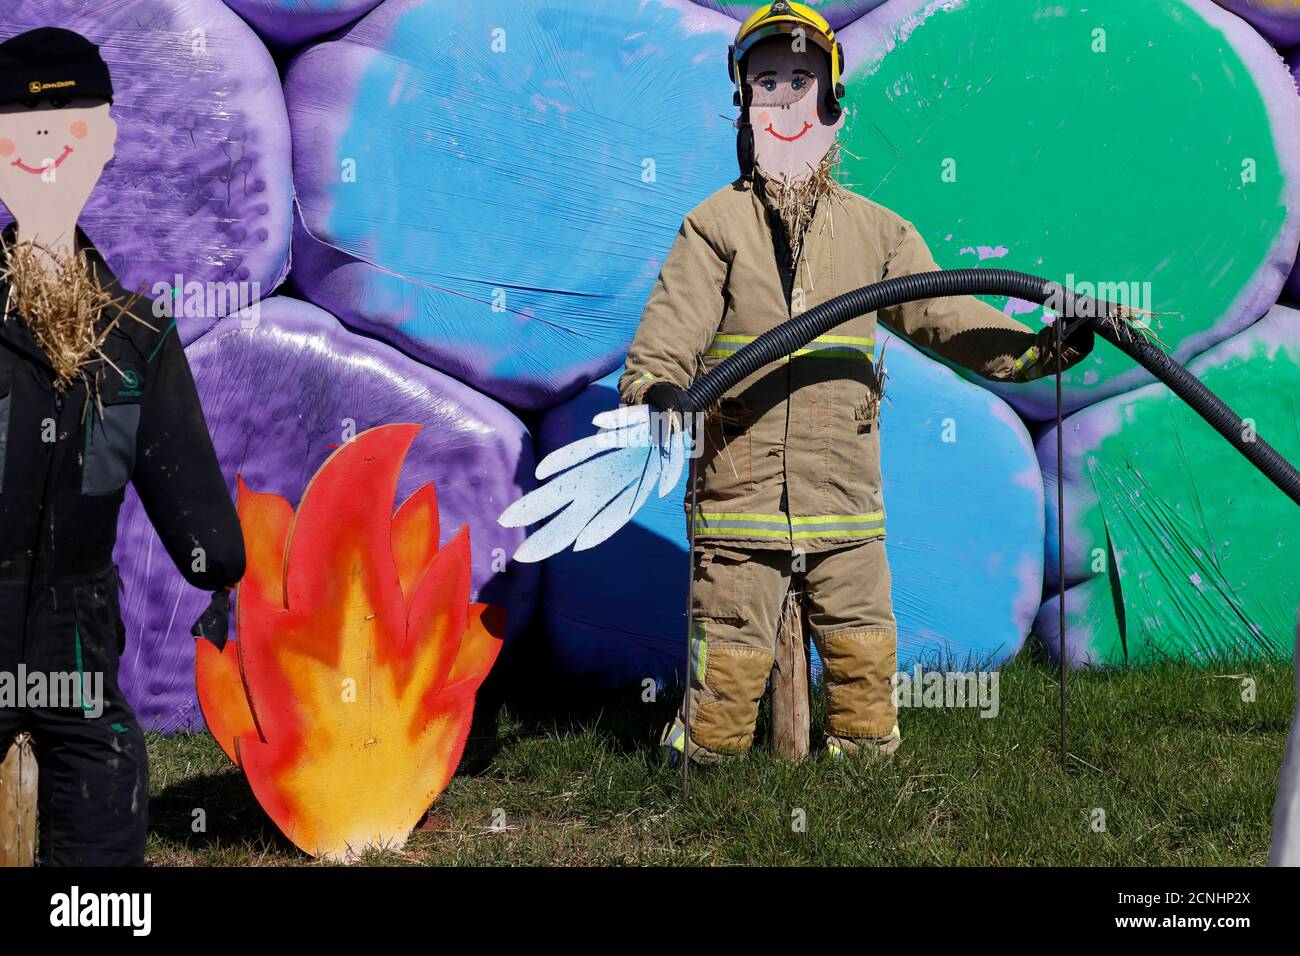 Uno spaventapasseri vestito da pompiere è visto di fronte a balle di fieno arcobaleno colorate in un'azienda agricola a Billinge a seguito dell'epidemia di coronavirus (COVID-19), Billinge, Gran Bretagna, 6 maggio 2020. REUTERS/Phil Noble Foto Stock